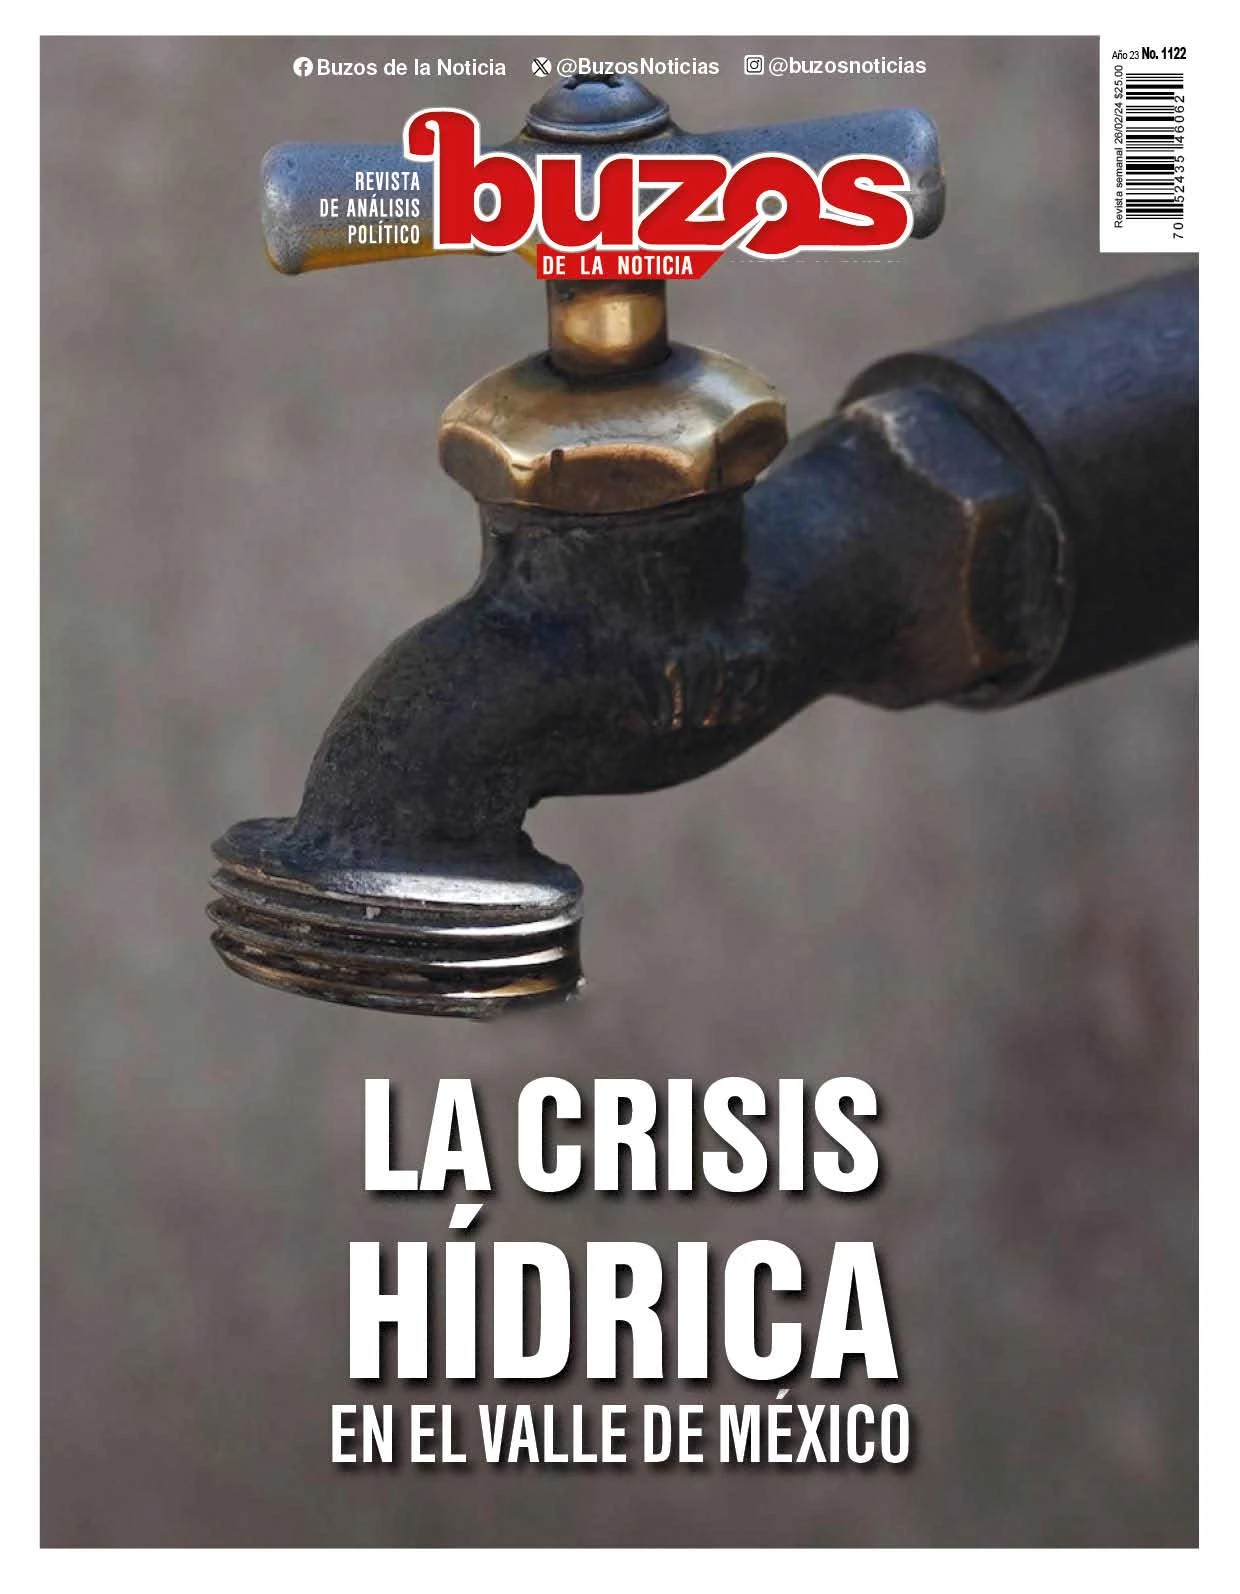 La crisis hídrica en el Estado de México